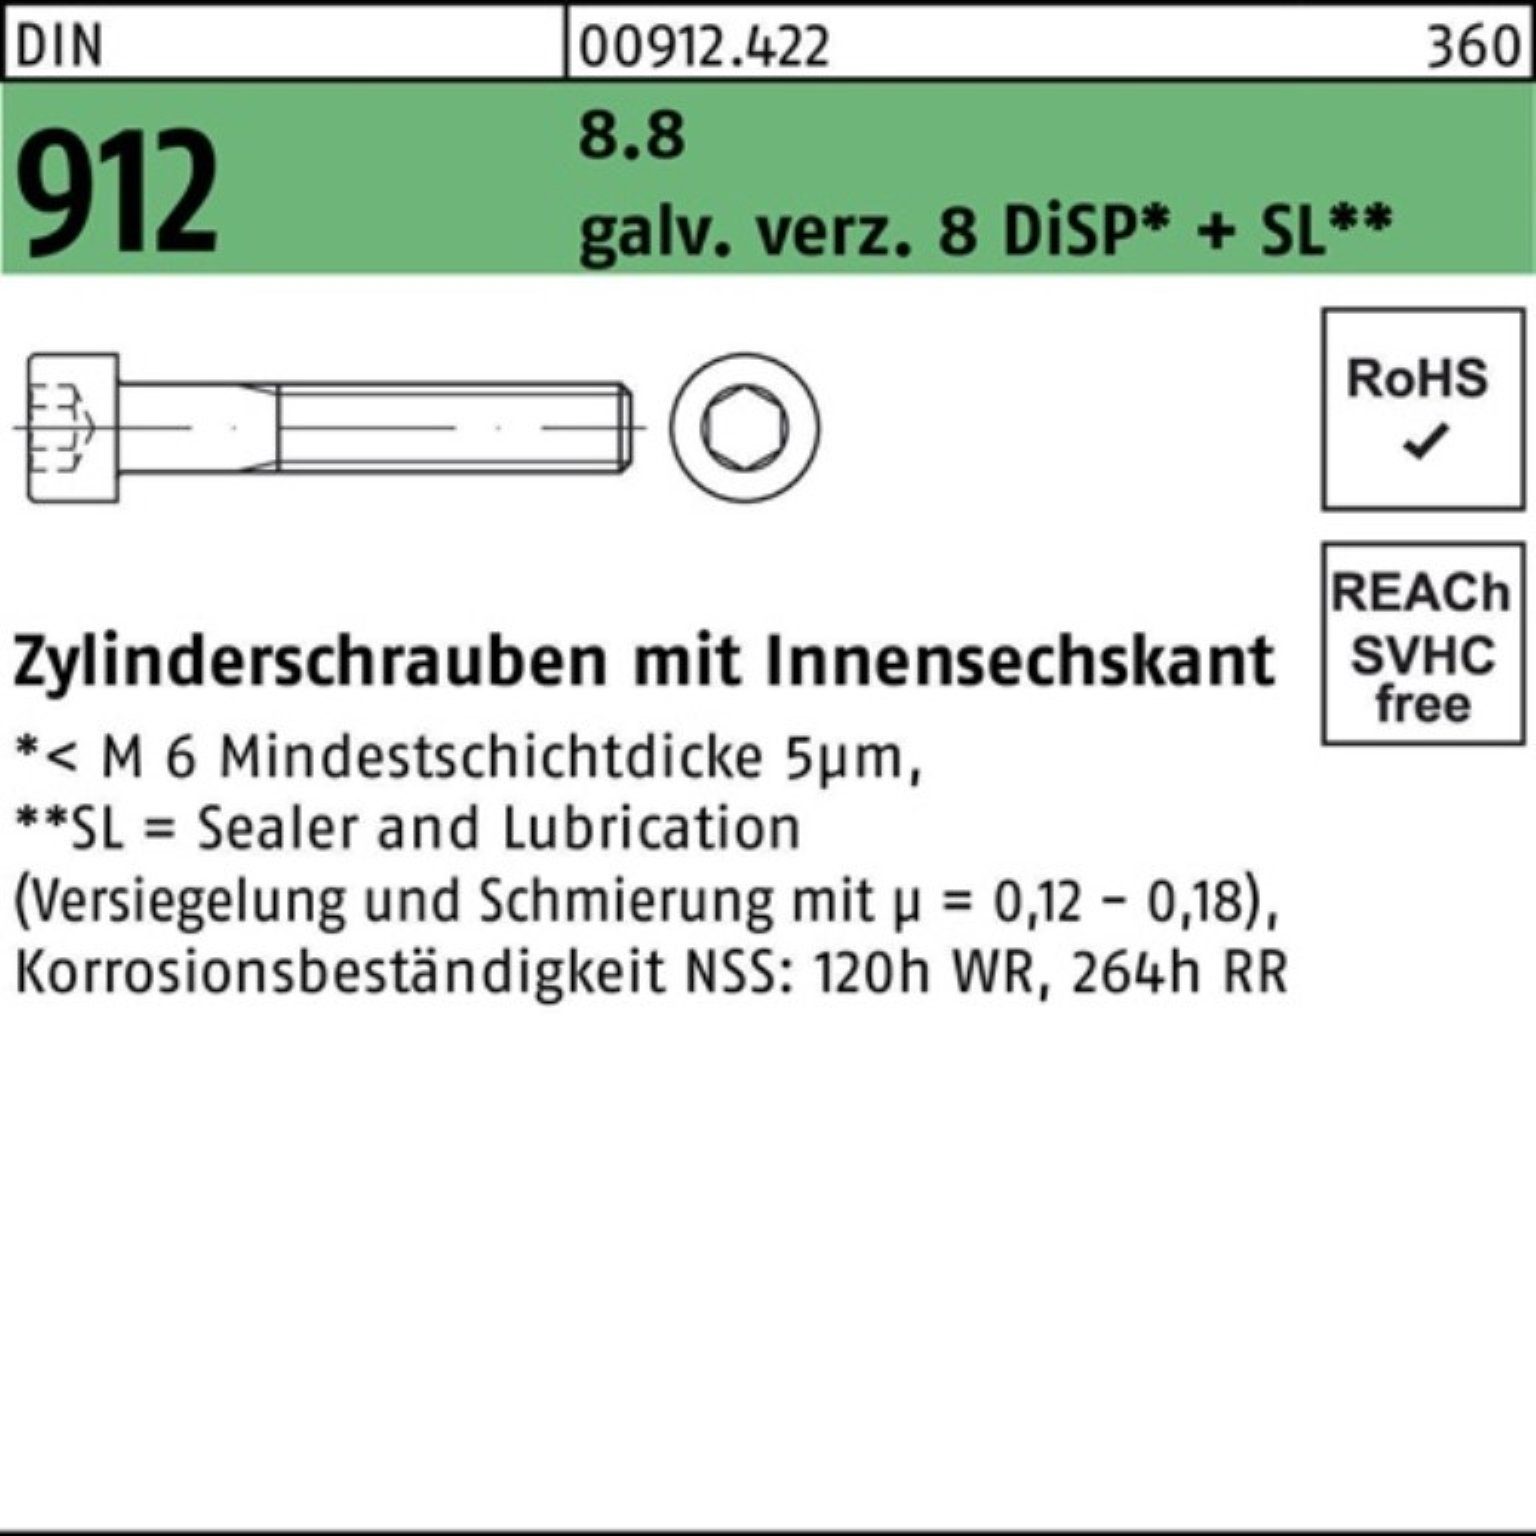 Pack Reyher 100er Zylinderschraube Innen-6kt Zylinderschraube Zn M16x140 912 DiS 8 gal DIN 8.8